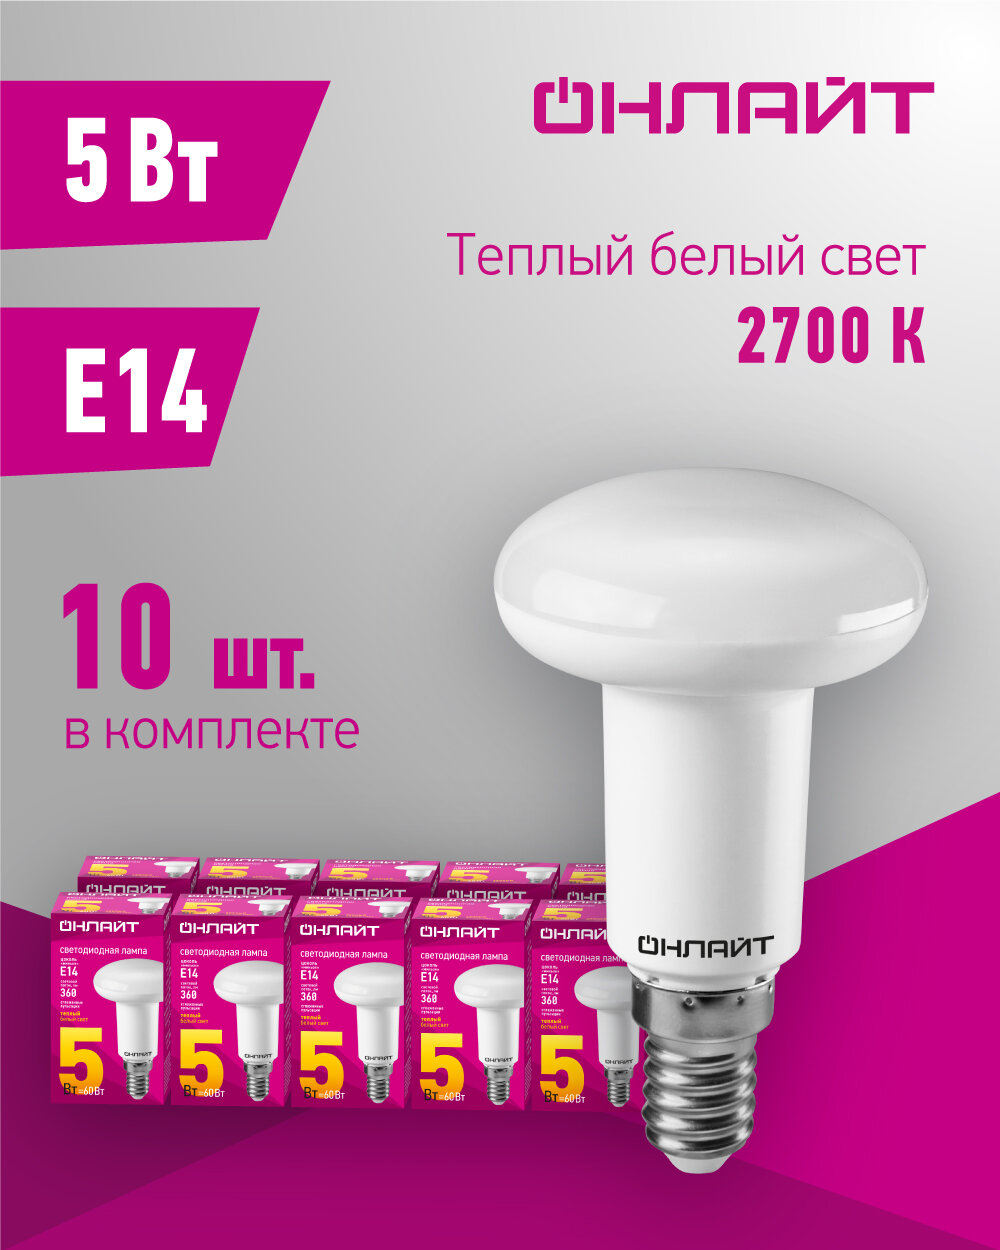 Лампа светодиодная онлайт 71 651, 5 Вт, рефлектор Е14, теплый свет 2700К, упаковка 10 шт.